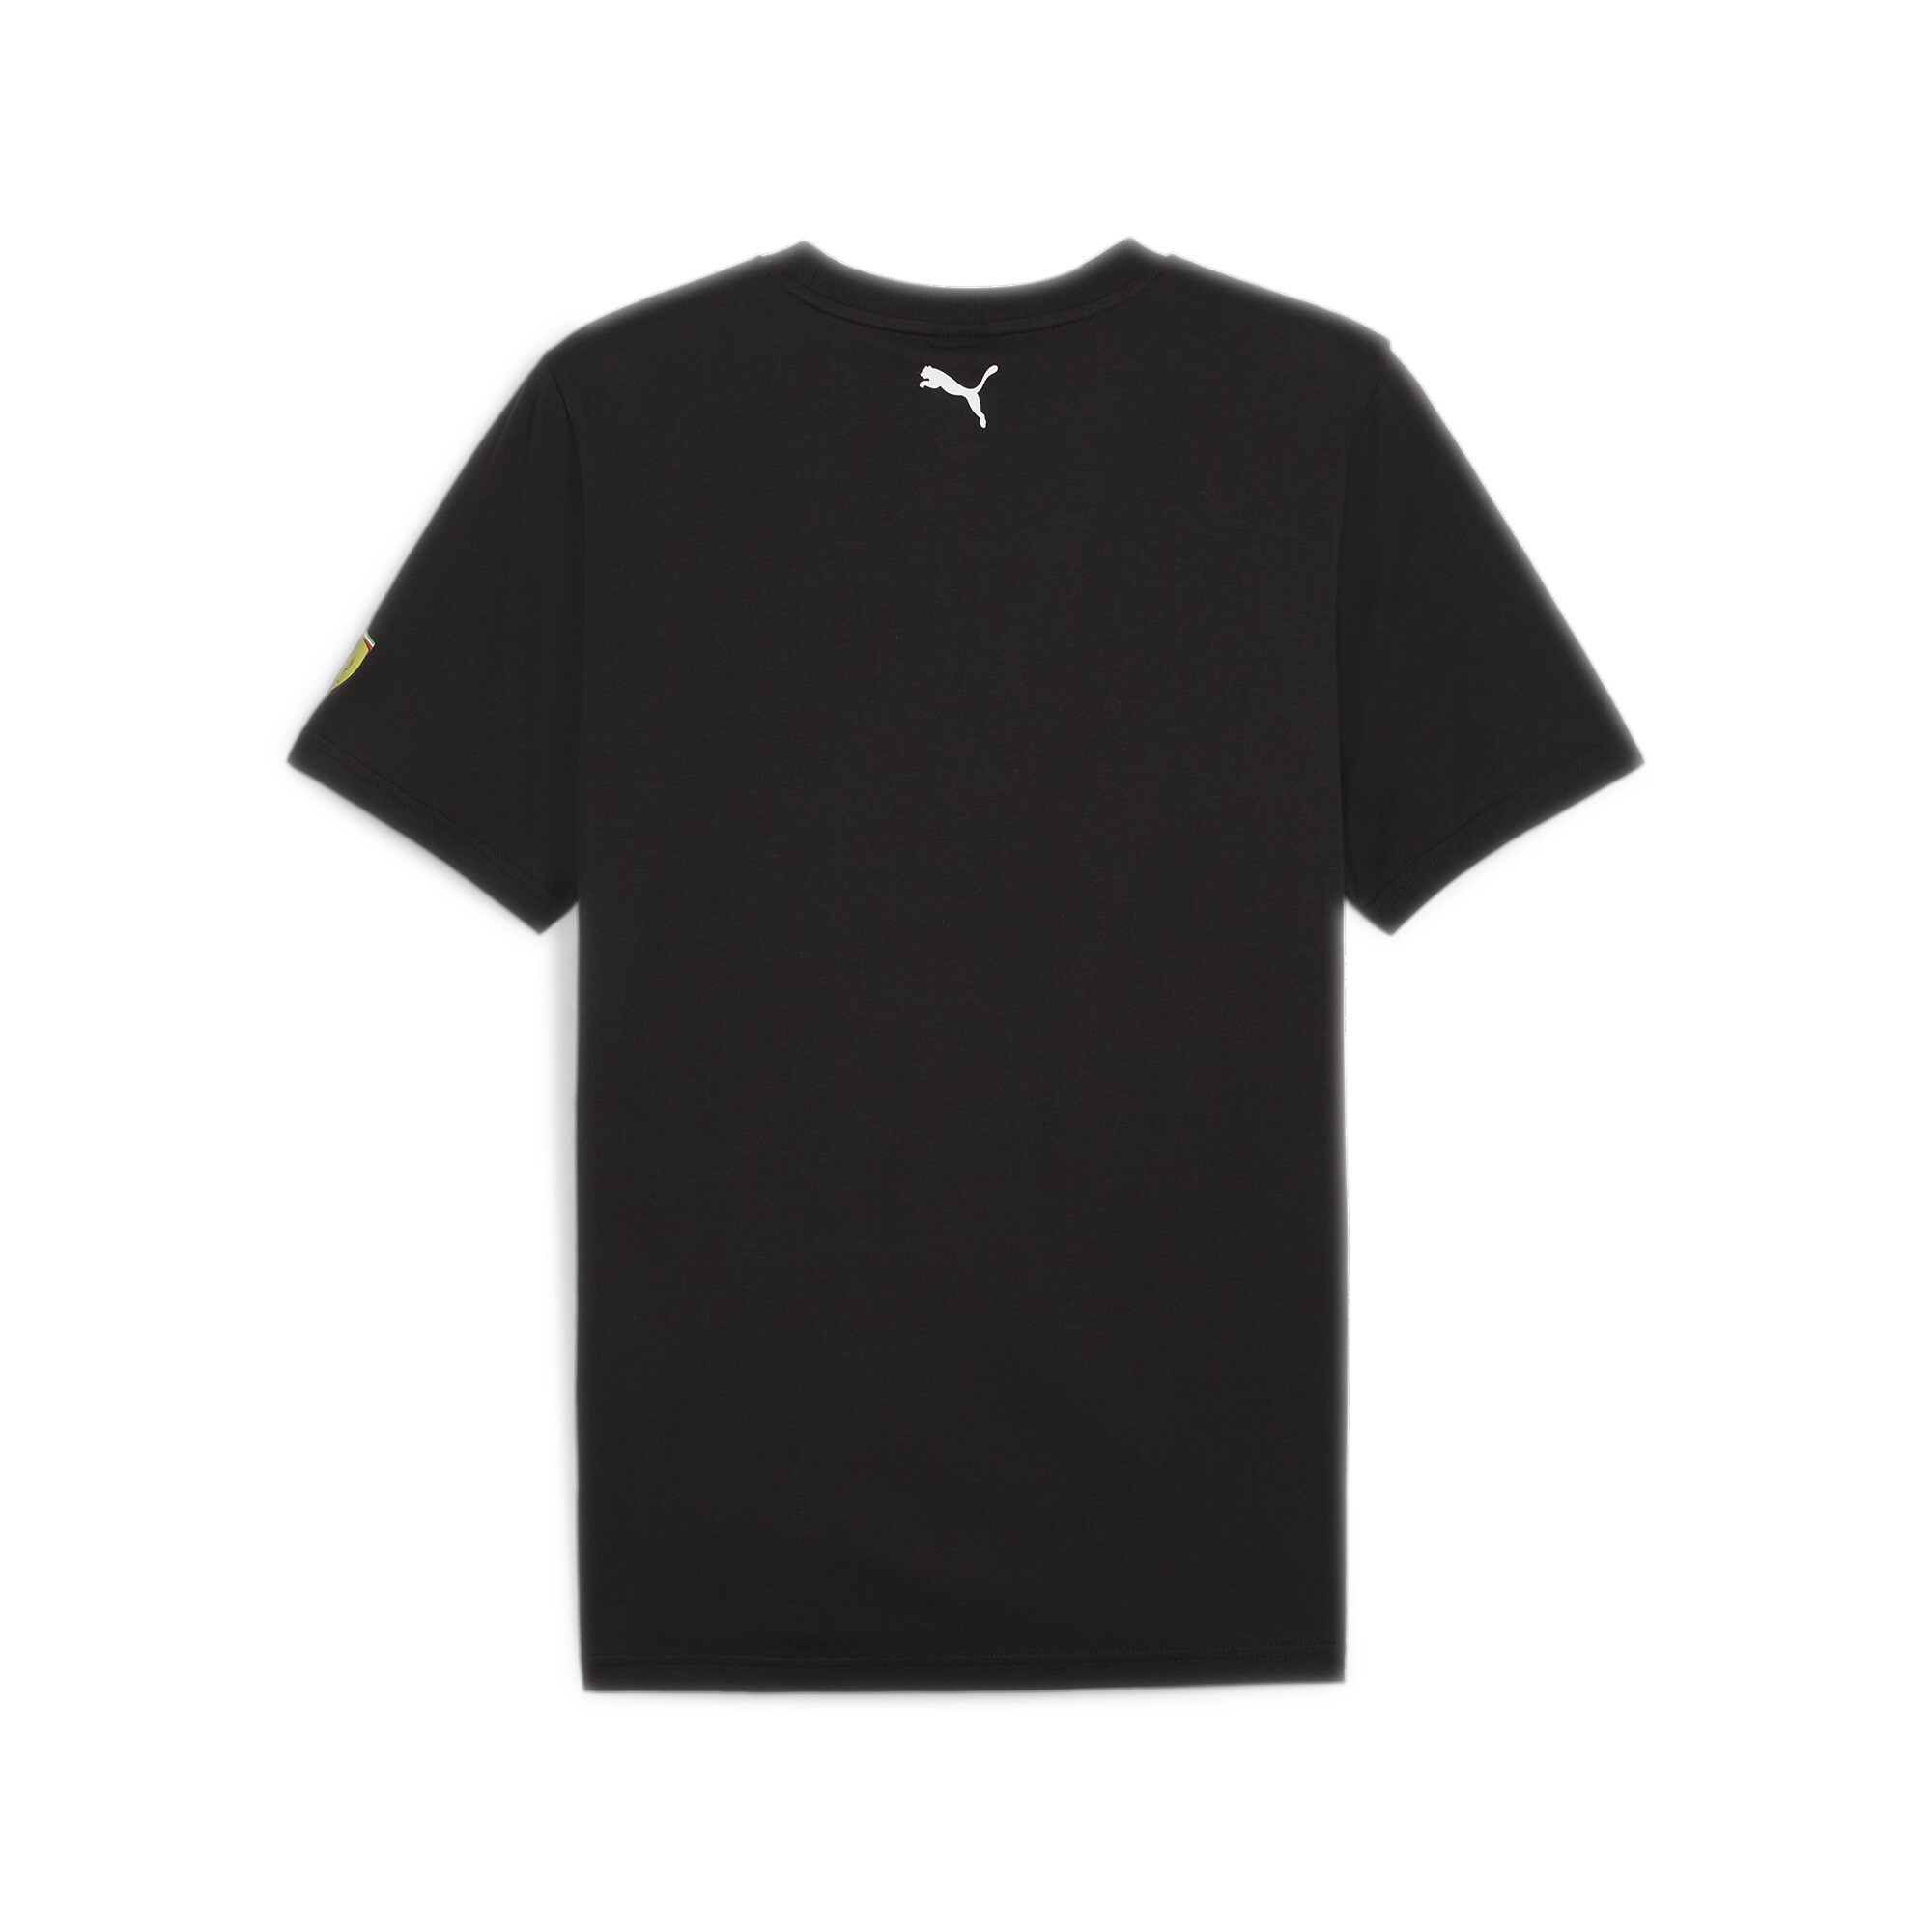 Men's PUMA Scuderia Ferrari Motorsport Race Graphic T-Shirt In Black, Size Small